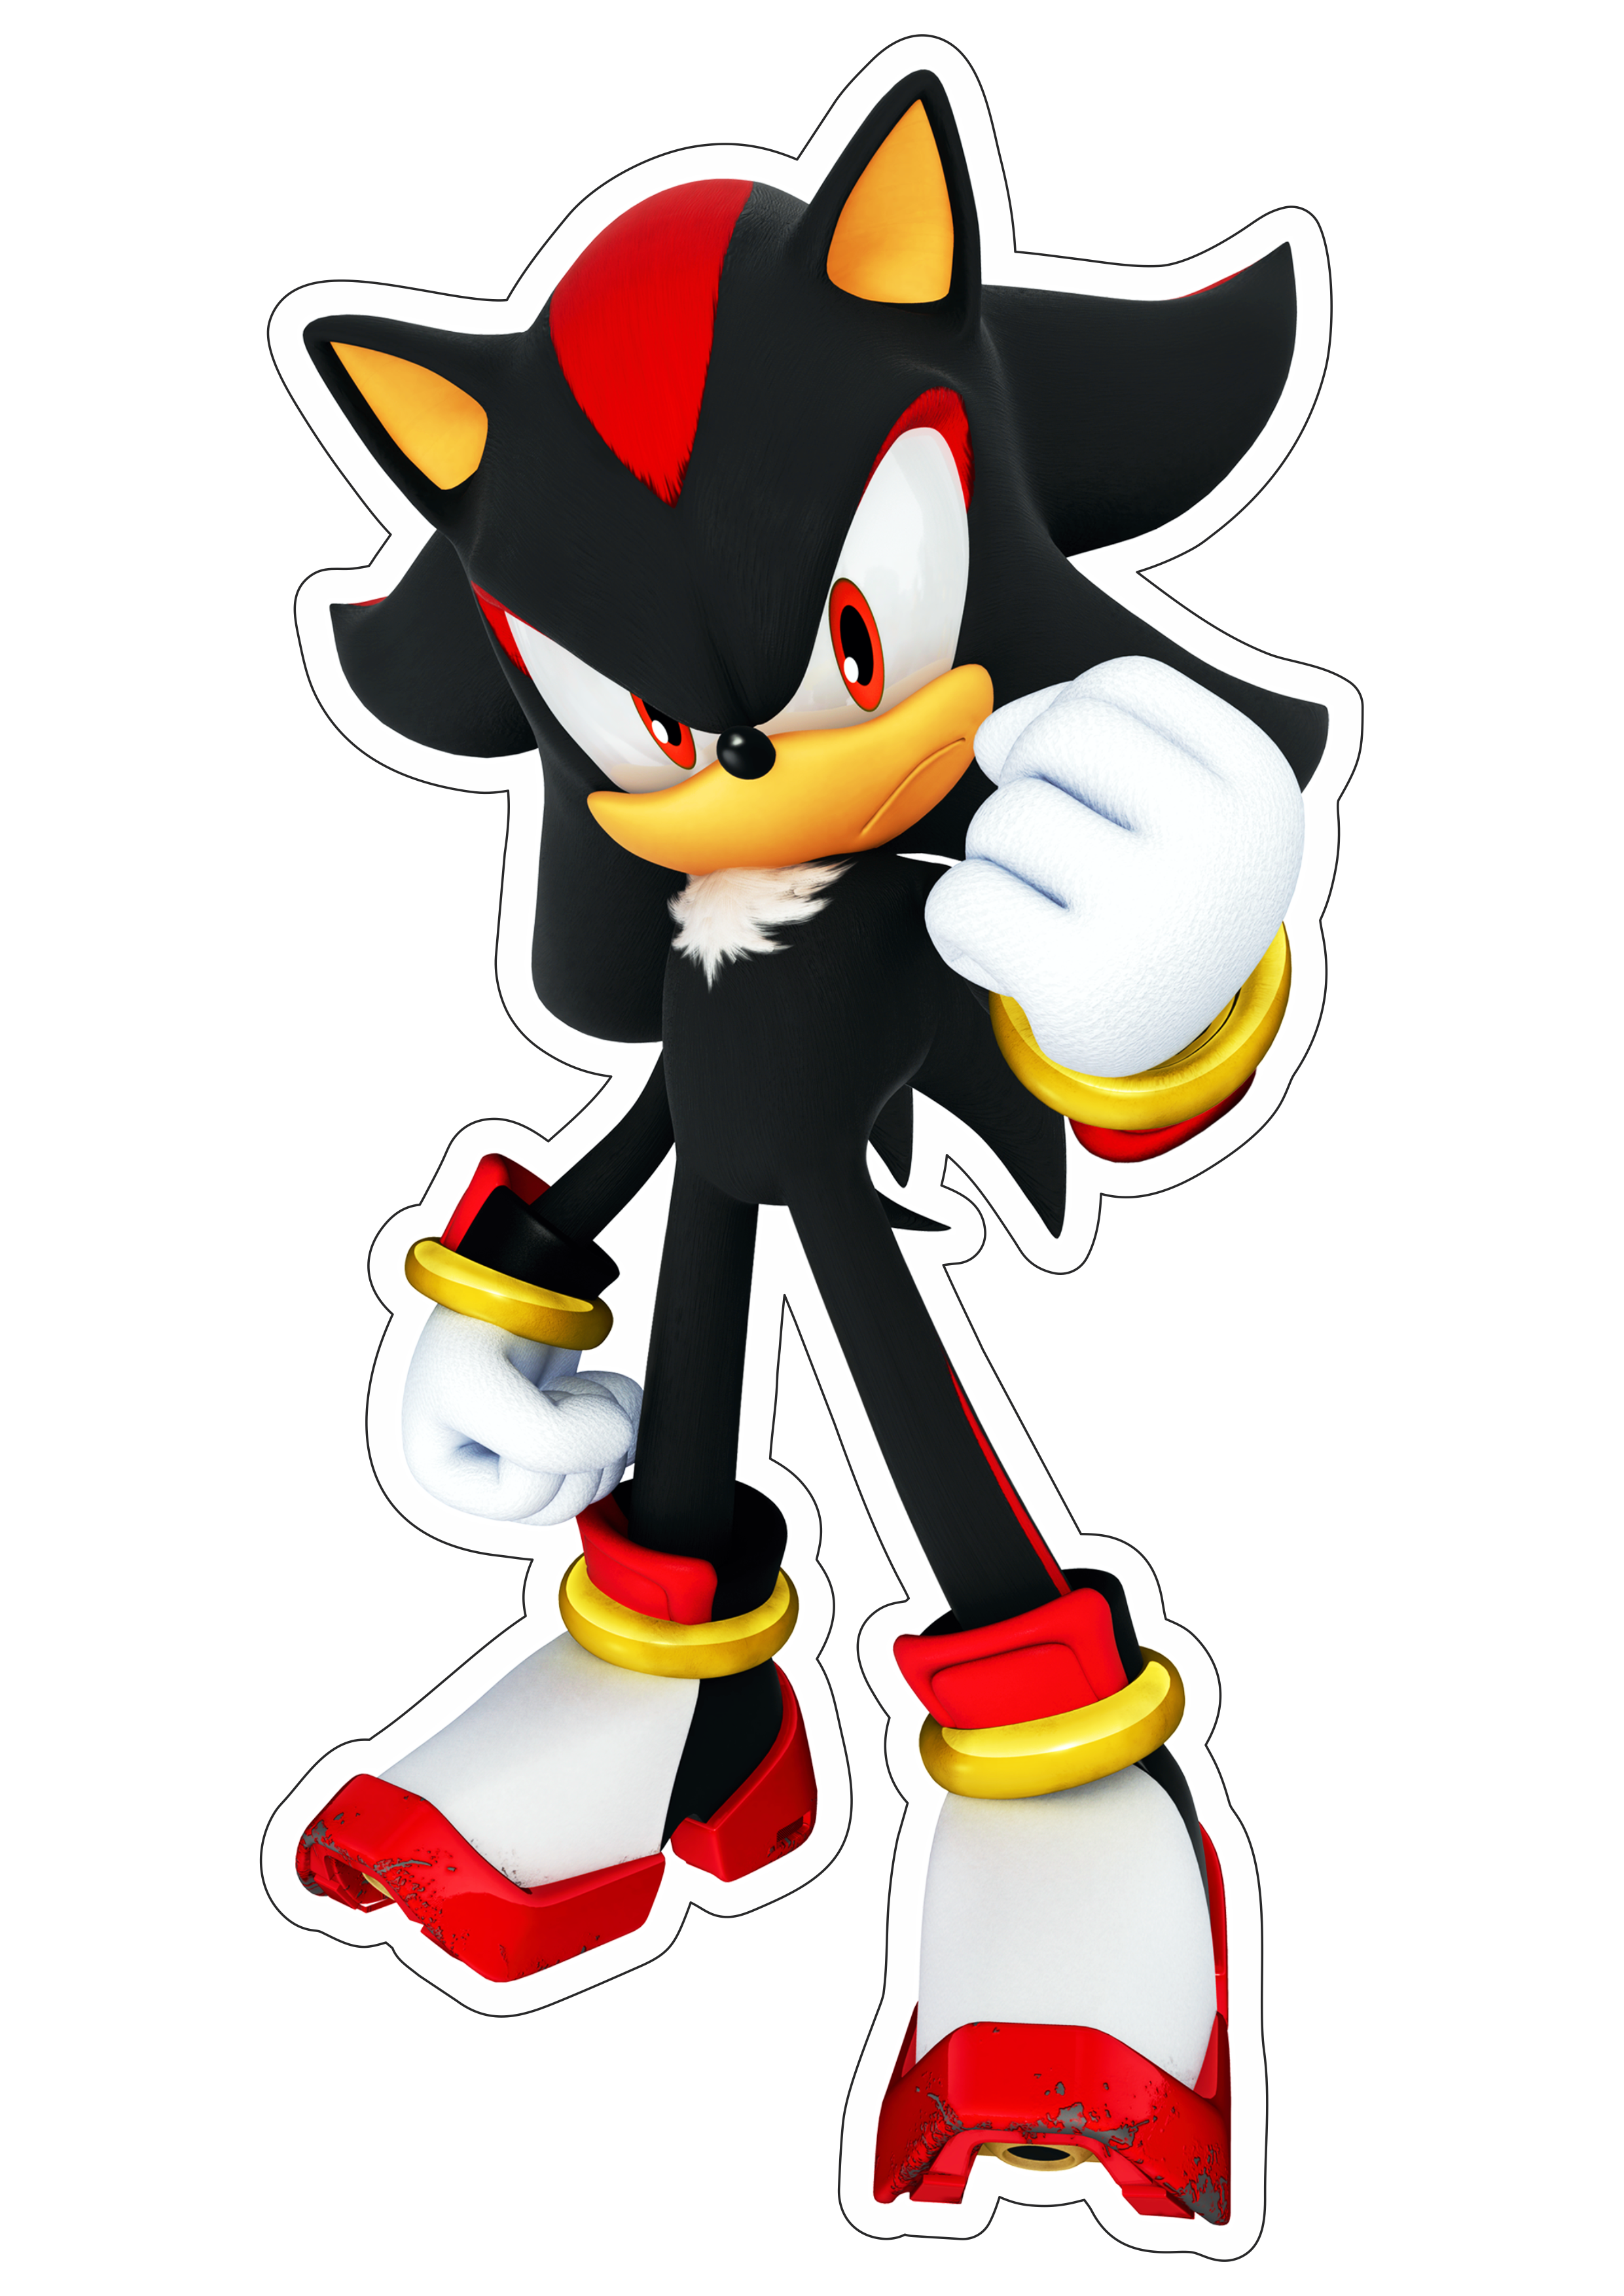 Shadow Sonic the hedgehog personagem de game imagem com fundo